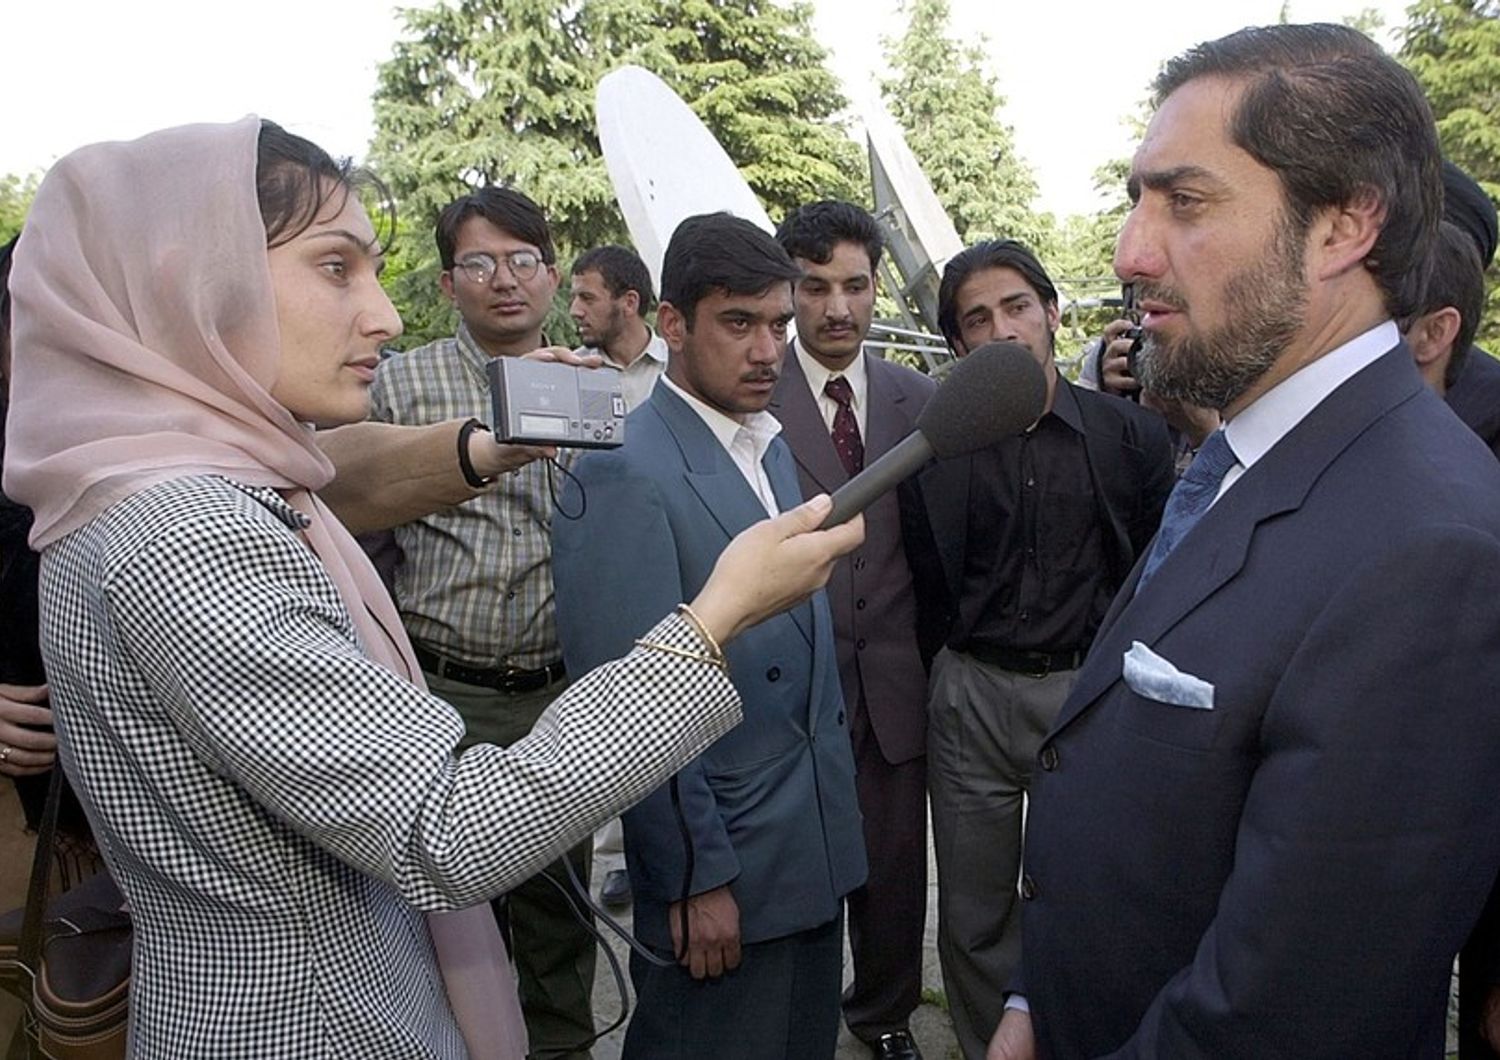 Una giornalista intervista il ministro degli Esteri afghano Abdullah Abdullah